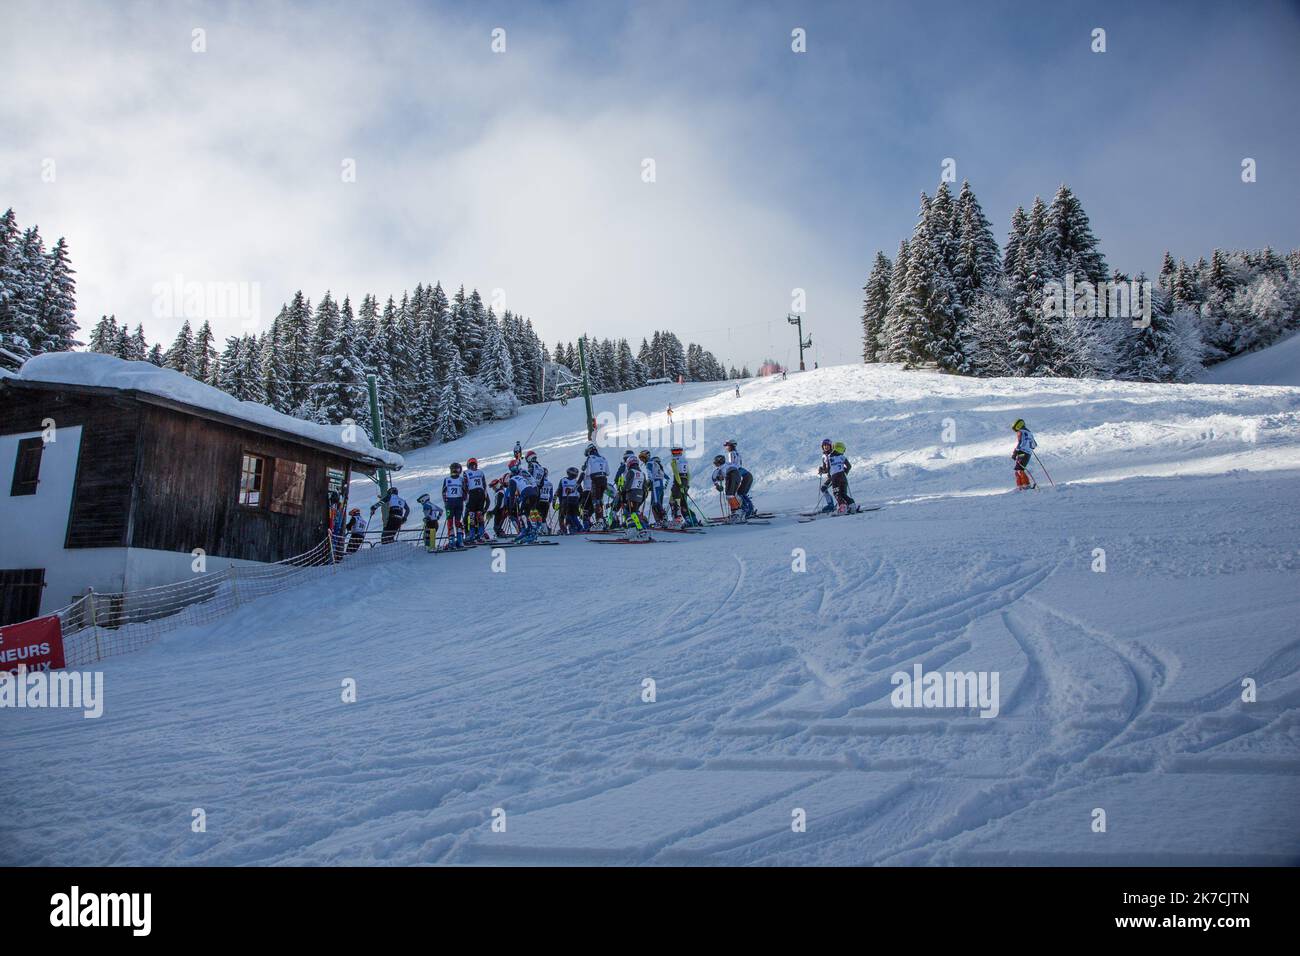 ©Sadak Souici / le Pictorium/MAXPPP - Sadak Souici / le Pictorium - 31/01/2021 - Francia / Haute-Savoie / Megeve - certaintes pistes de ski sont ouvertes pour les skis club de la region. Mecré est une commune francaise situee dans le departement de la Haute-Savoie, en region Auvergne-Rodano-Alpi. Le village est un vero centro urbain situe en altitude, il comprtait 3 043 abitants en 2018, ce qui en fait la trente-deuxieme ville haut-savoyarde. / 31/01/2021 - Francia / alta Savoia (dipartimento francese) / Megeve - alcune piste sono aperte per lo sci club locale. Megeve è un comune francese situato Foto Stock